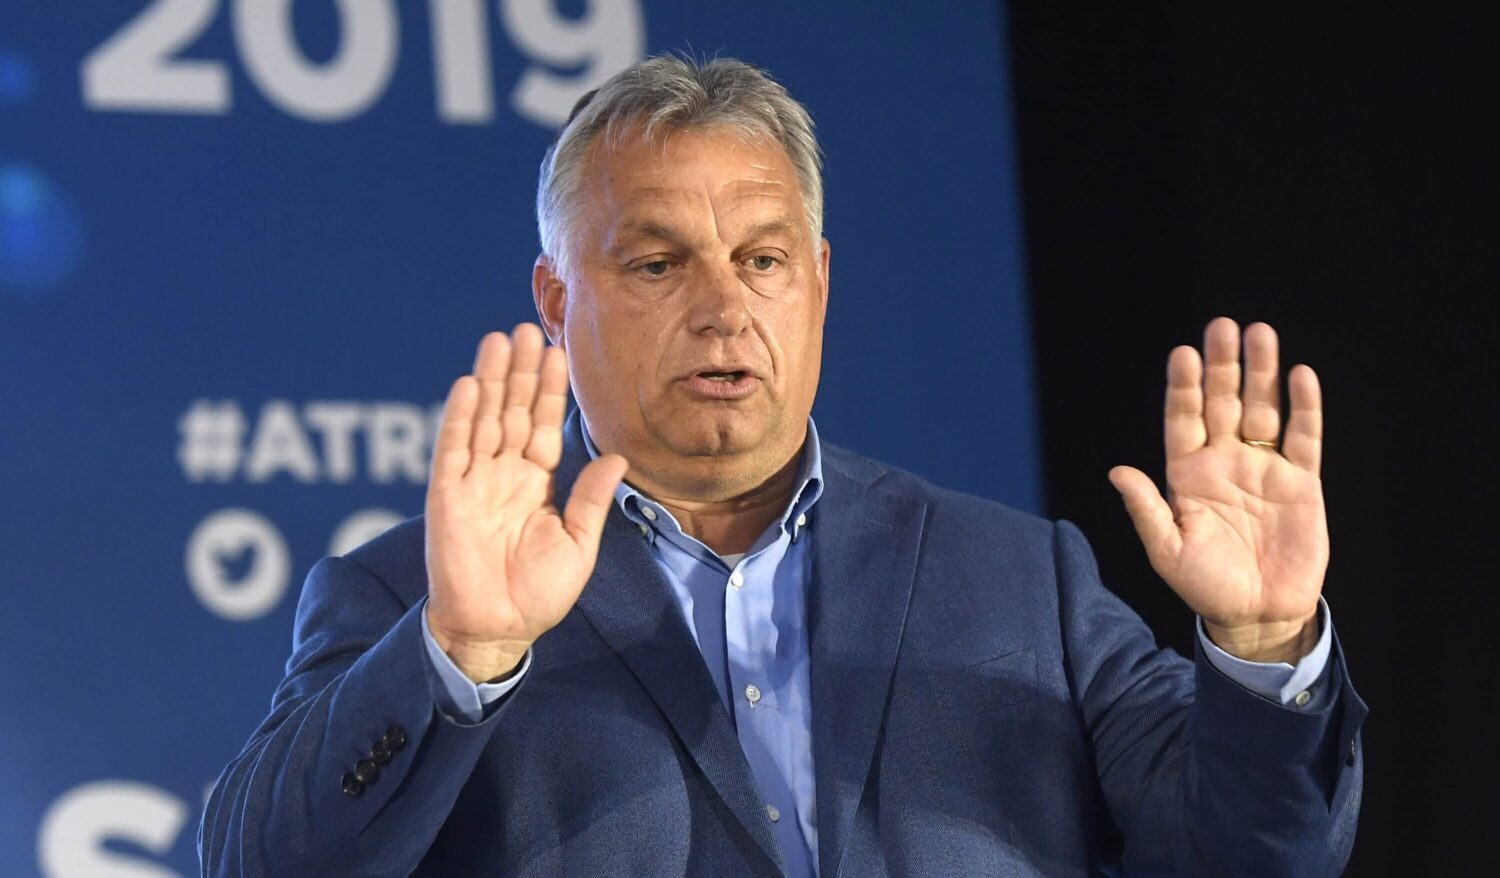 Meloni che piega Orbán L’ultima balla a rotative unificate. Elogi per la mediazione di Giorgia ma è Viktor che ha fregato l’Ue